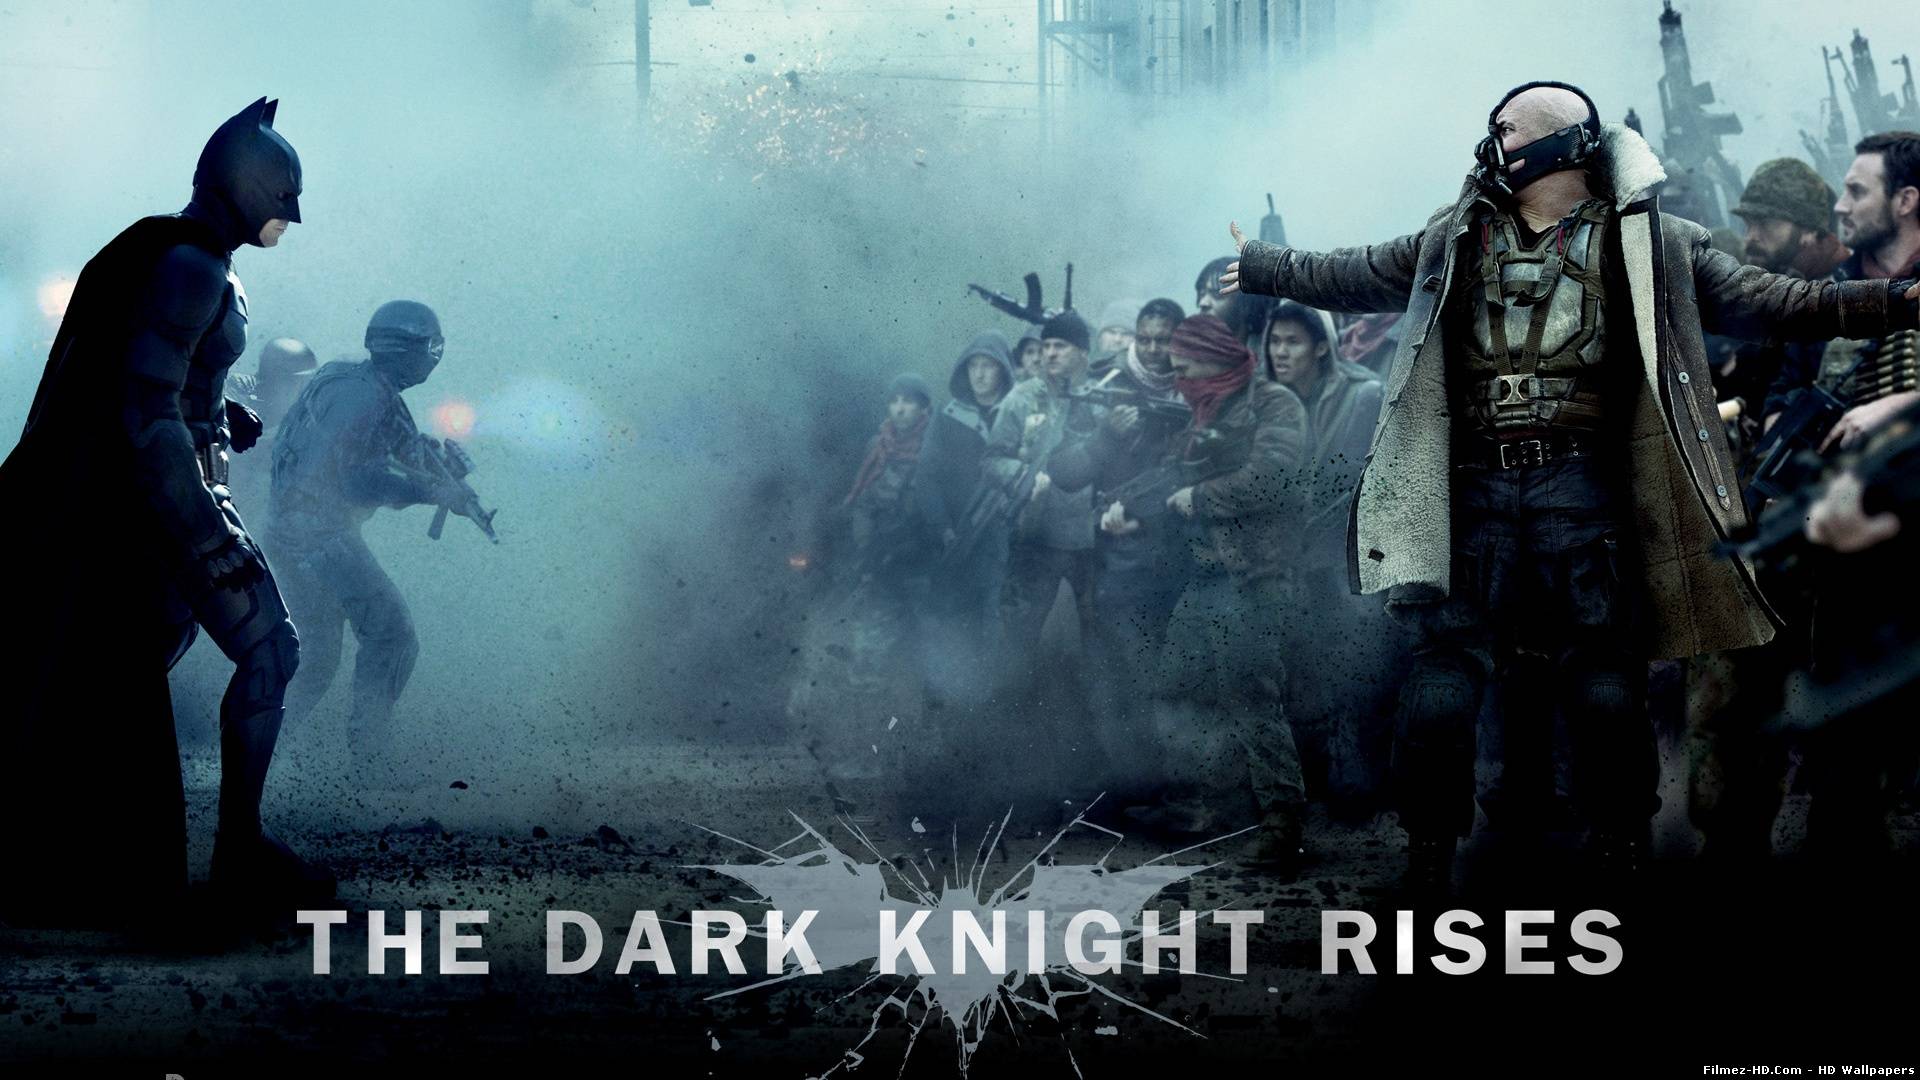 Batman Film The Dark Knight Rises